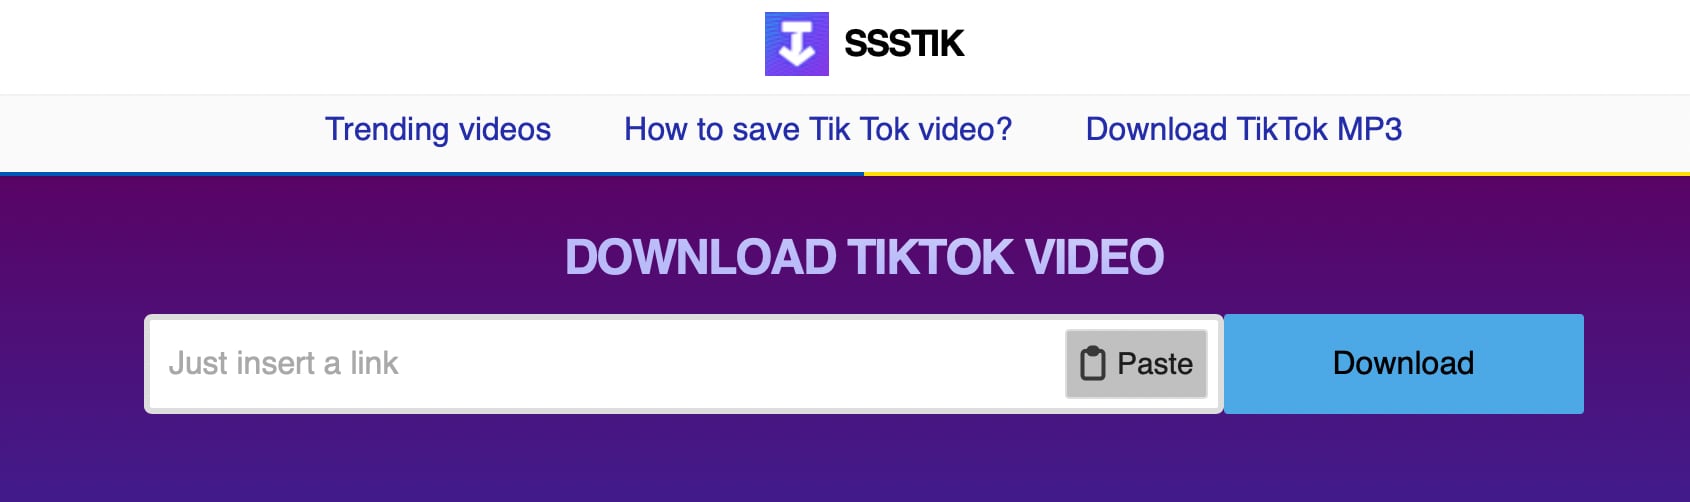 Trucos y funciones para ser todo un experto en TikTok. (foto: SSSTIK)